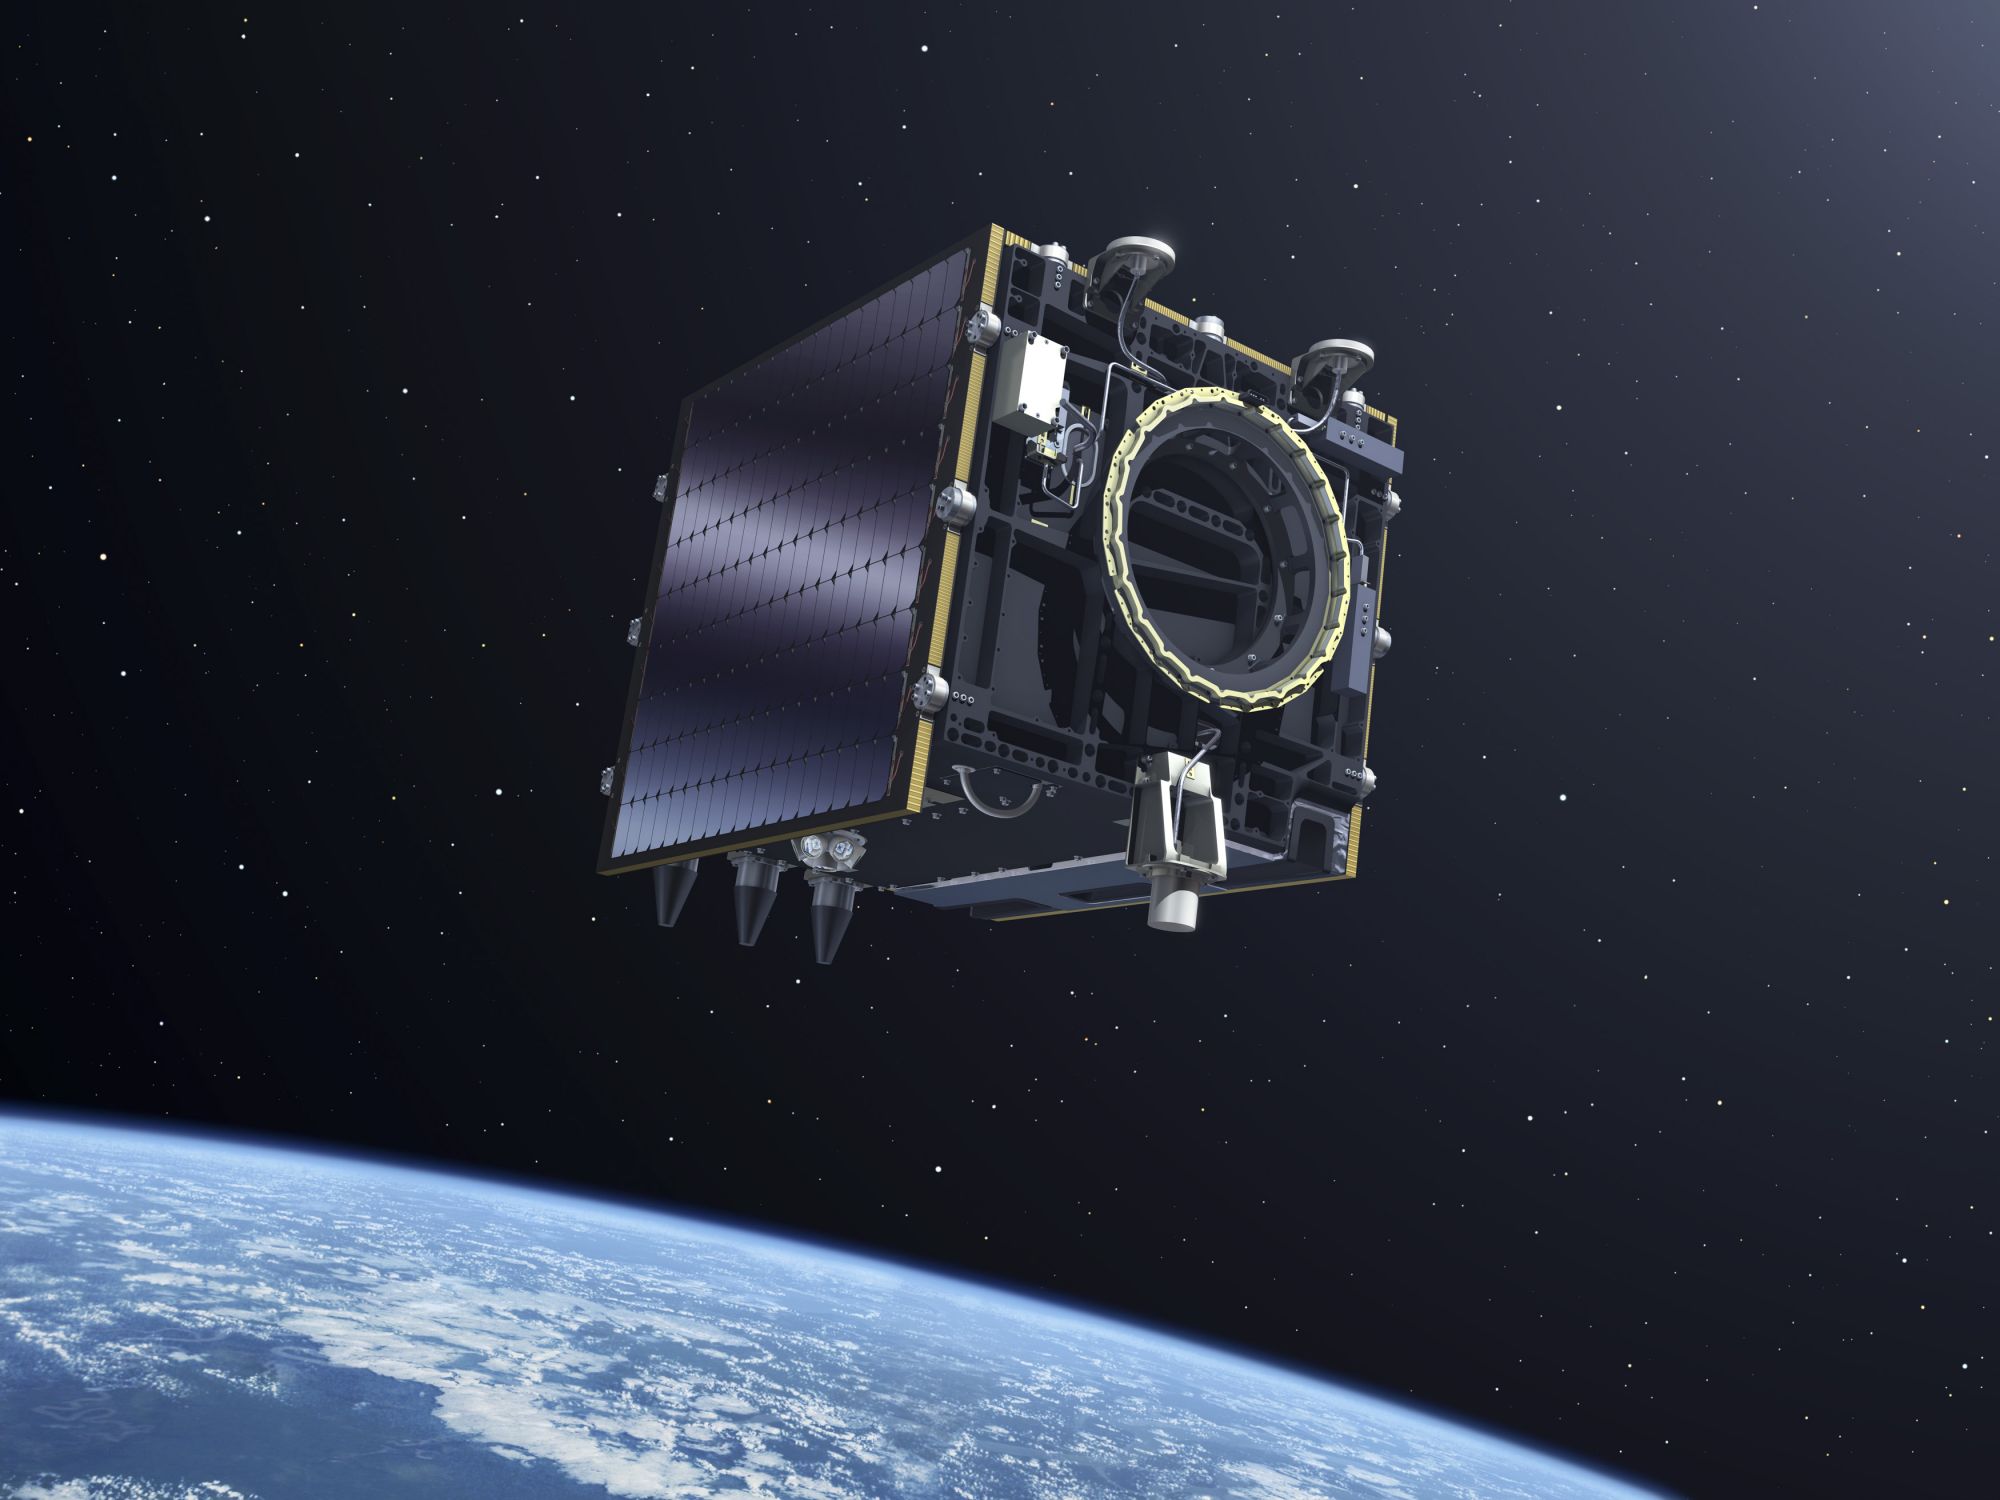 PROBA-V. Спутник дистанционного зондирования Земли, запущенный в 2013 году. Использует радиационно стойкие процессоры LEON2-FT, изготовленные по 180-нанометровой технологии, как Pentium III из середины 1990-х